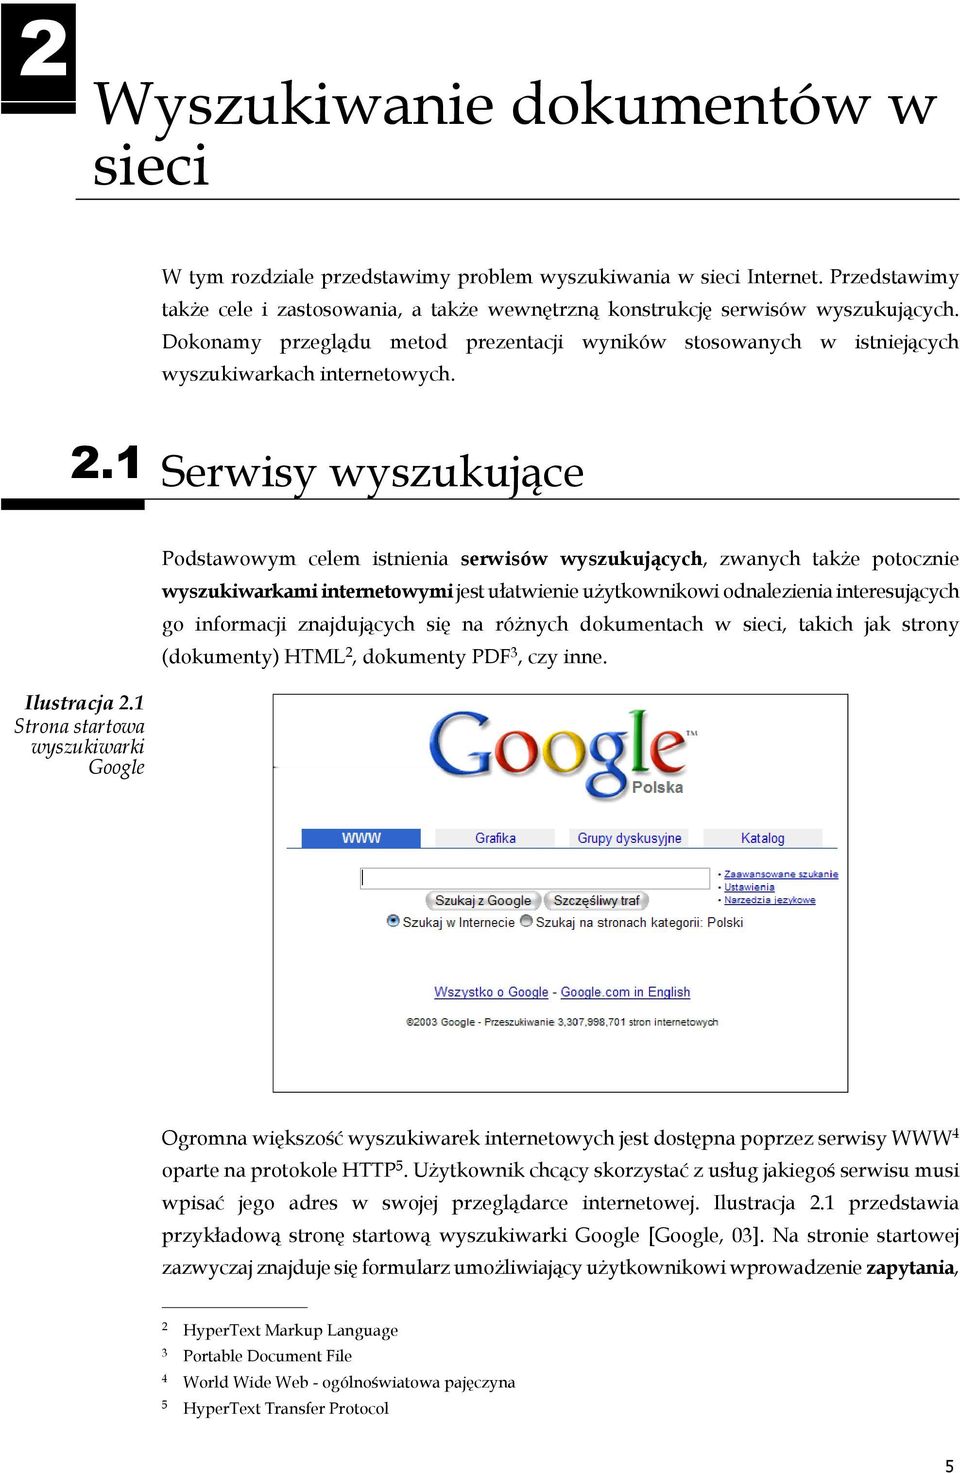 1 Strona startowa wyszukiwarki Google Podstawowym celem istnienia serwisów wyszukujących, zwanych także potocznie wyszukiwarkami internetowymi jest ułatwienie użytkownikowi odnalezienia